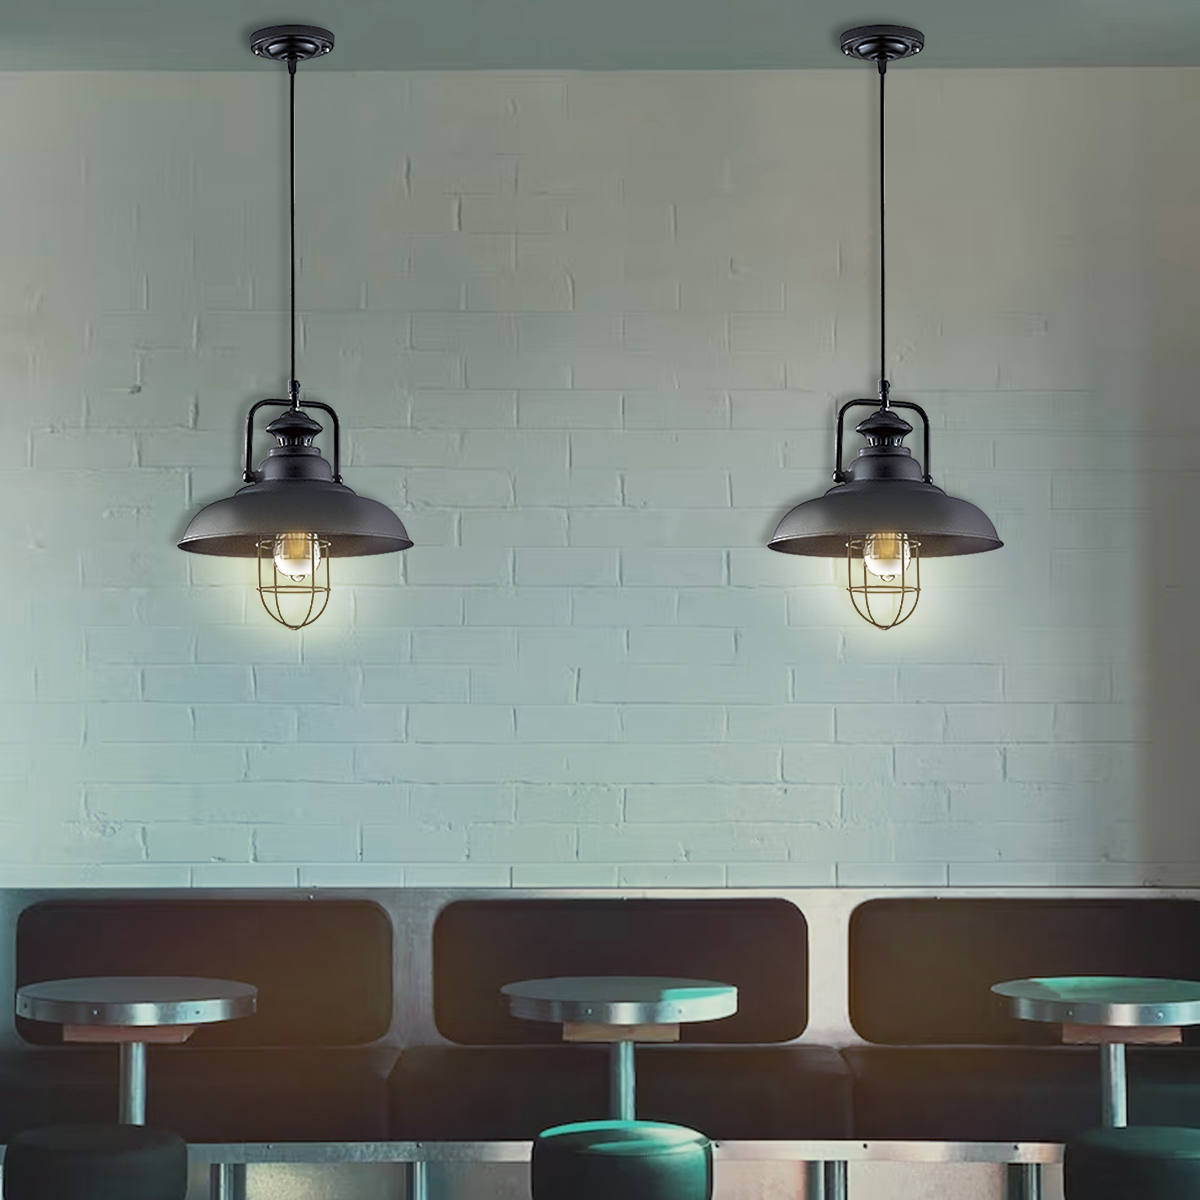 工業風復刻 餐廳單吊燈 需搭配燈絲型E27燈泡